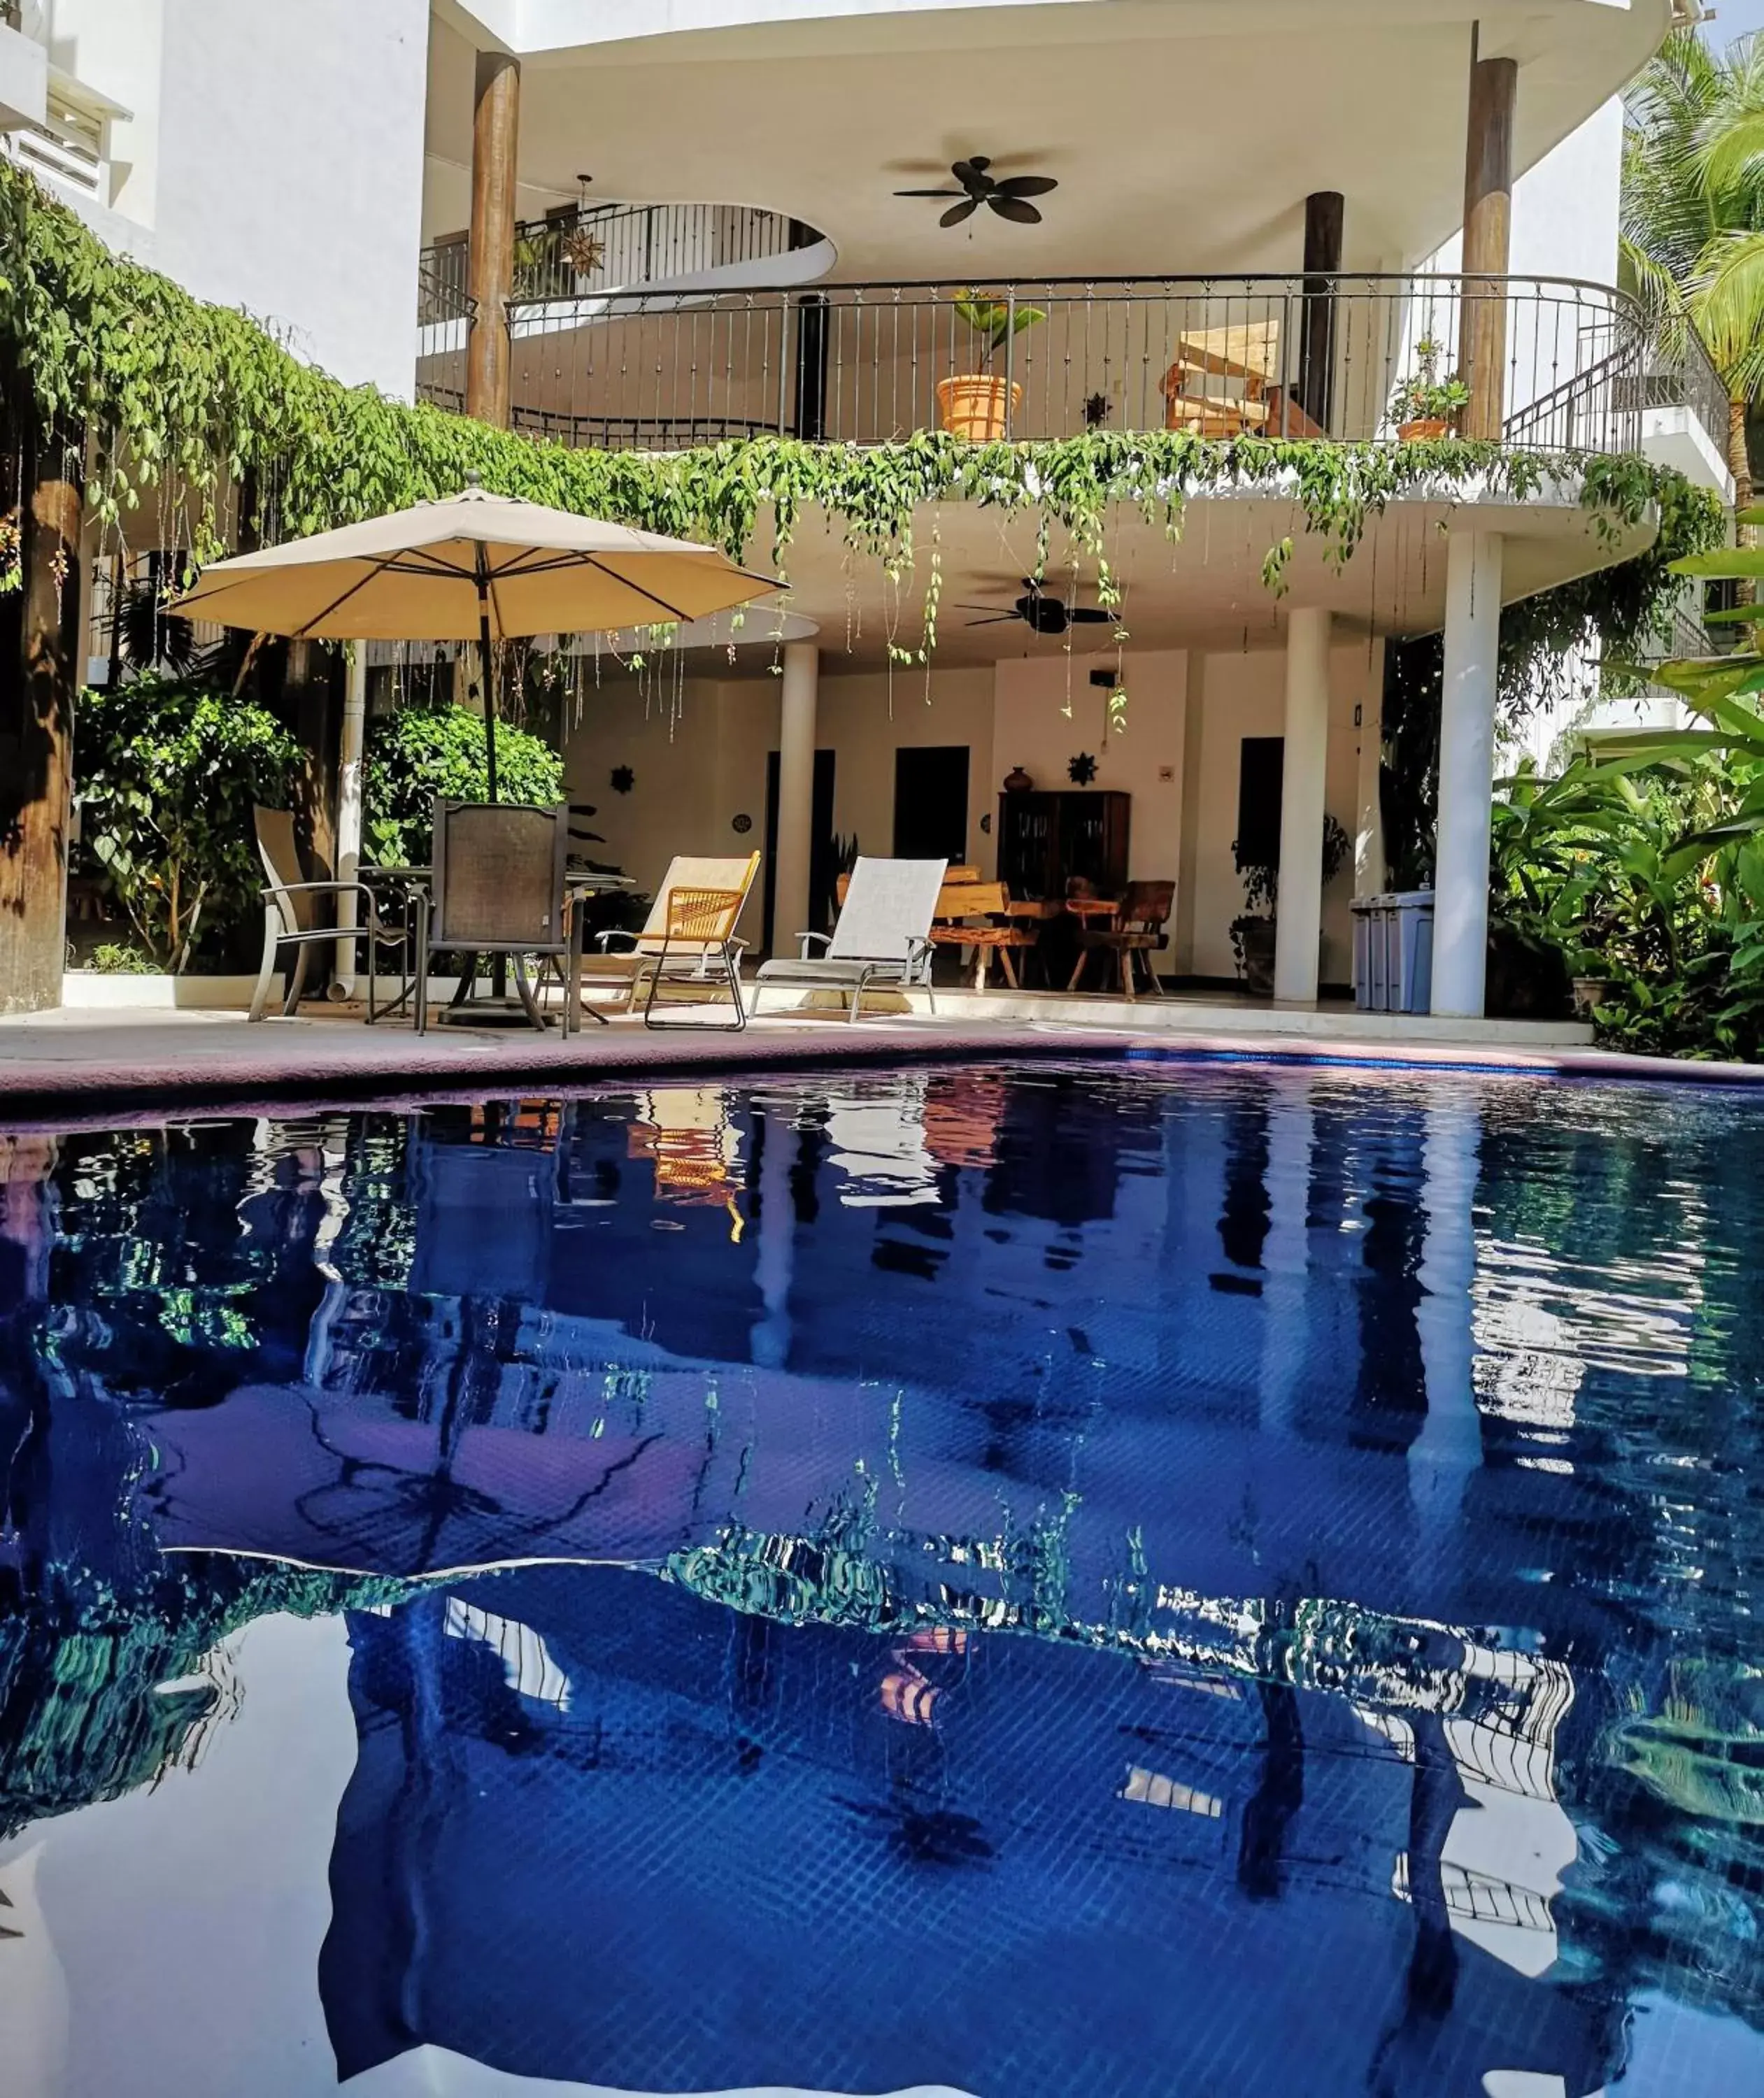 Property building, Swimming Pool in Hotelito Los Sueños